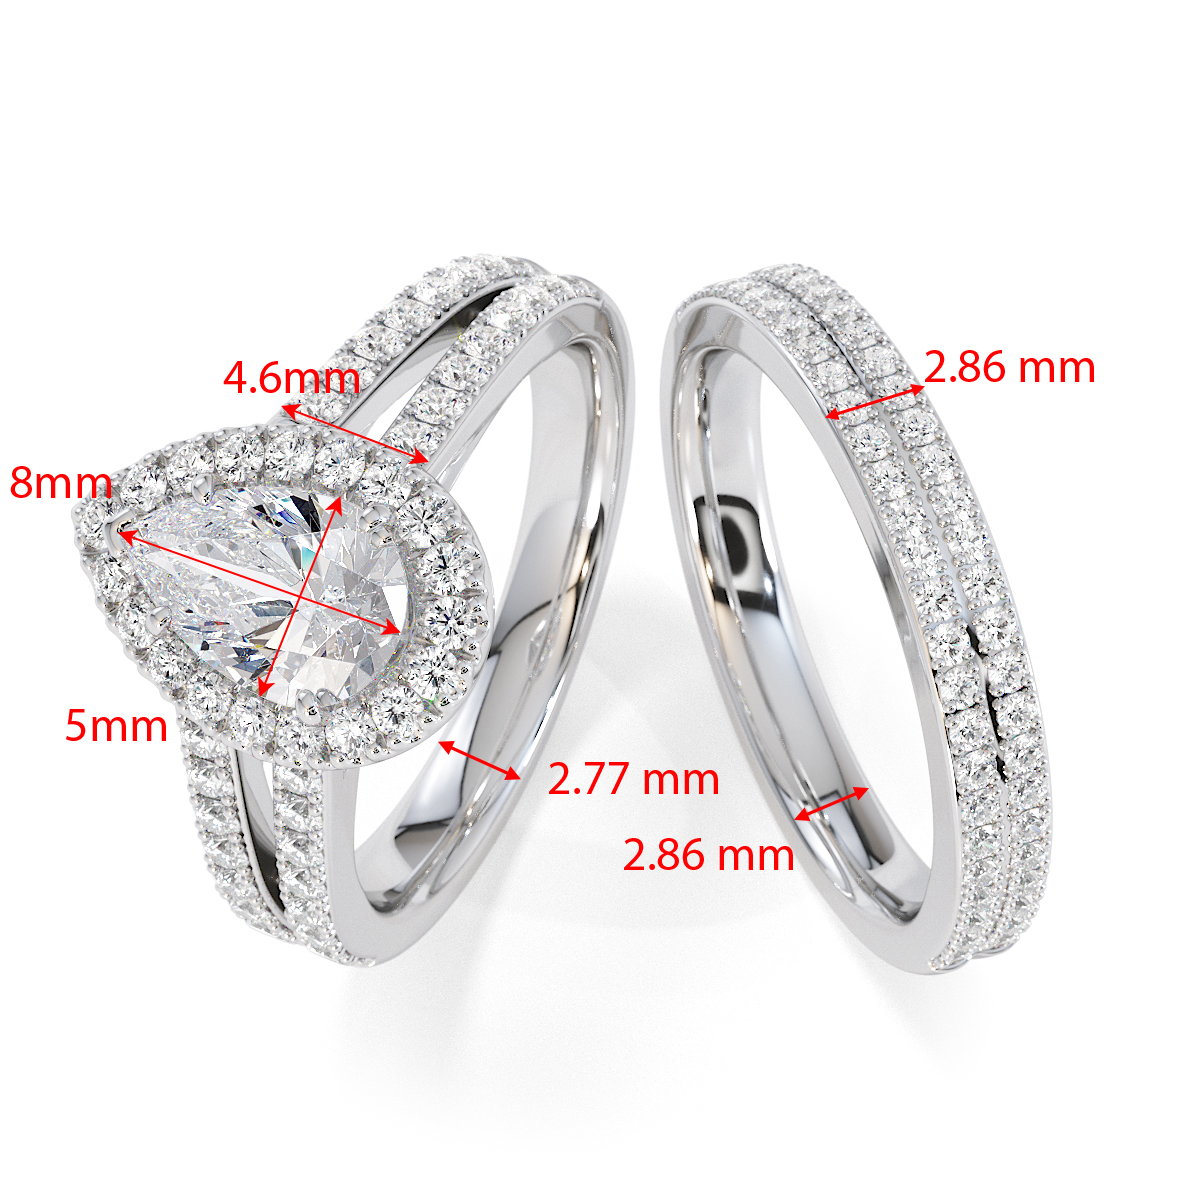 Gold / Platinum Tanzanite and Diamond Engagement Ring RZ3465